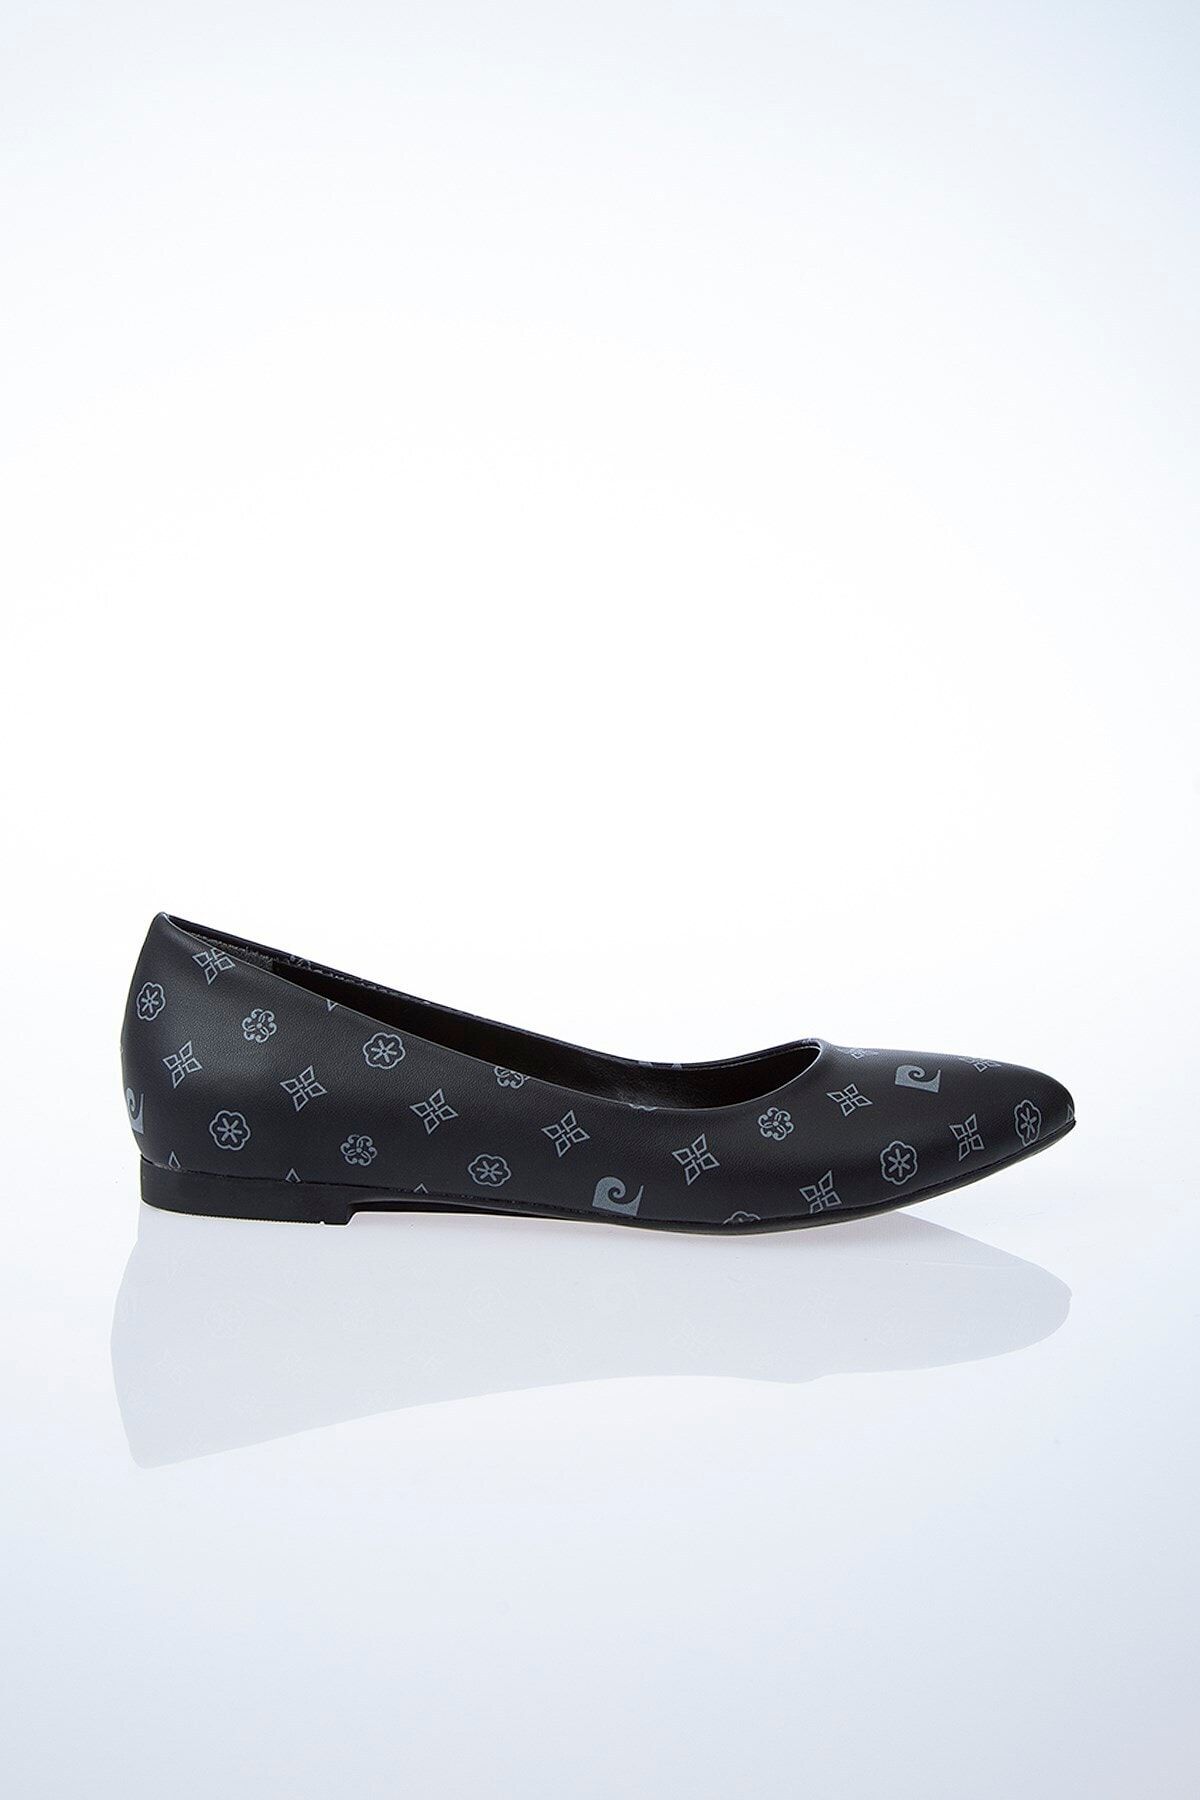 Pierre Cardin PC-50189 Siyah-Gri Kadın Ayakkabı